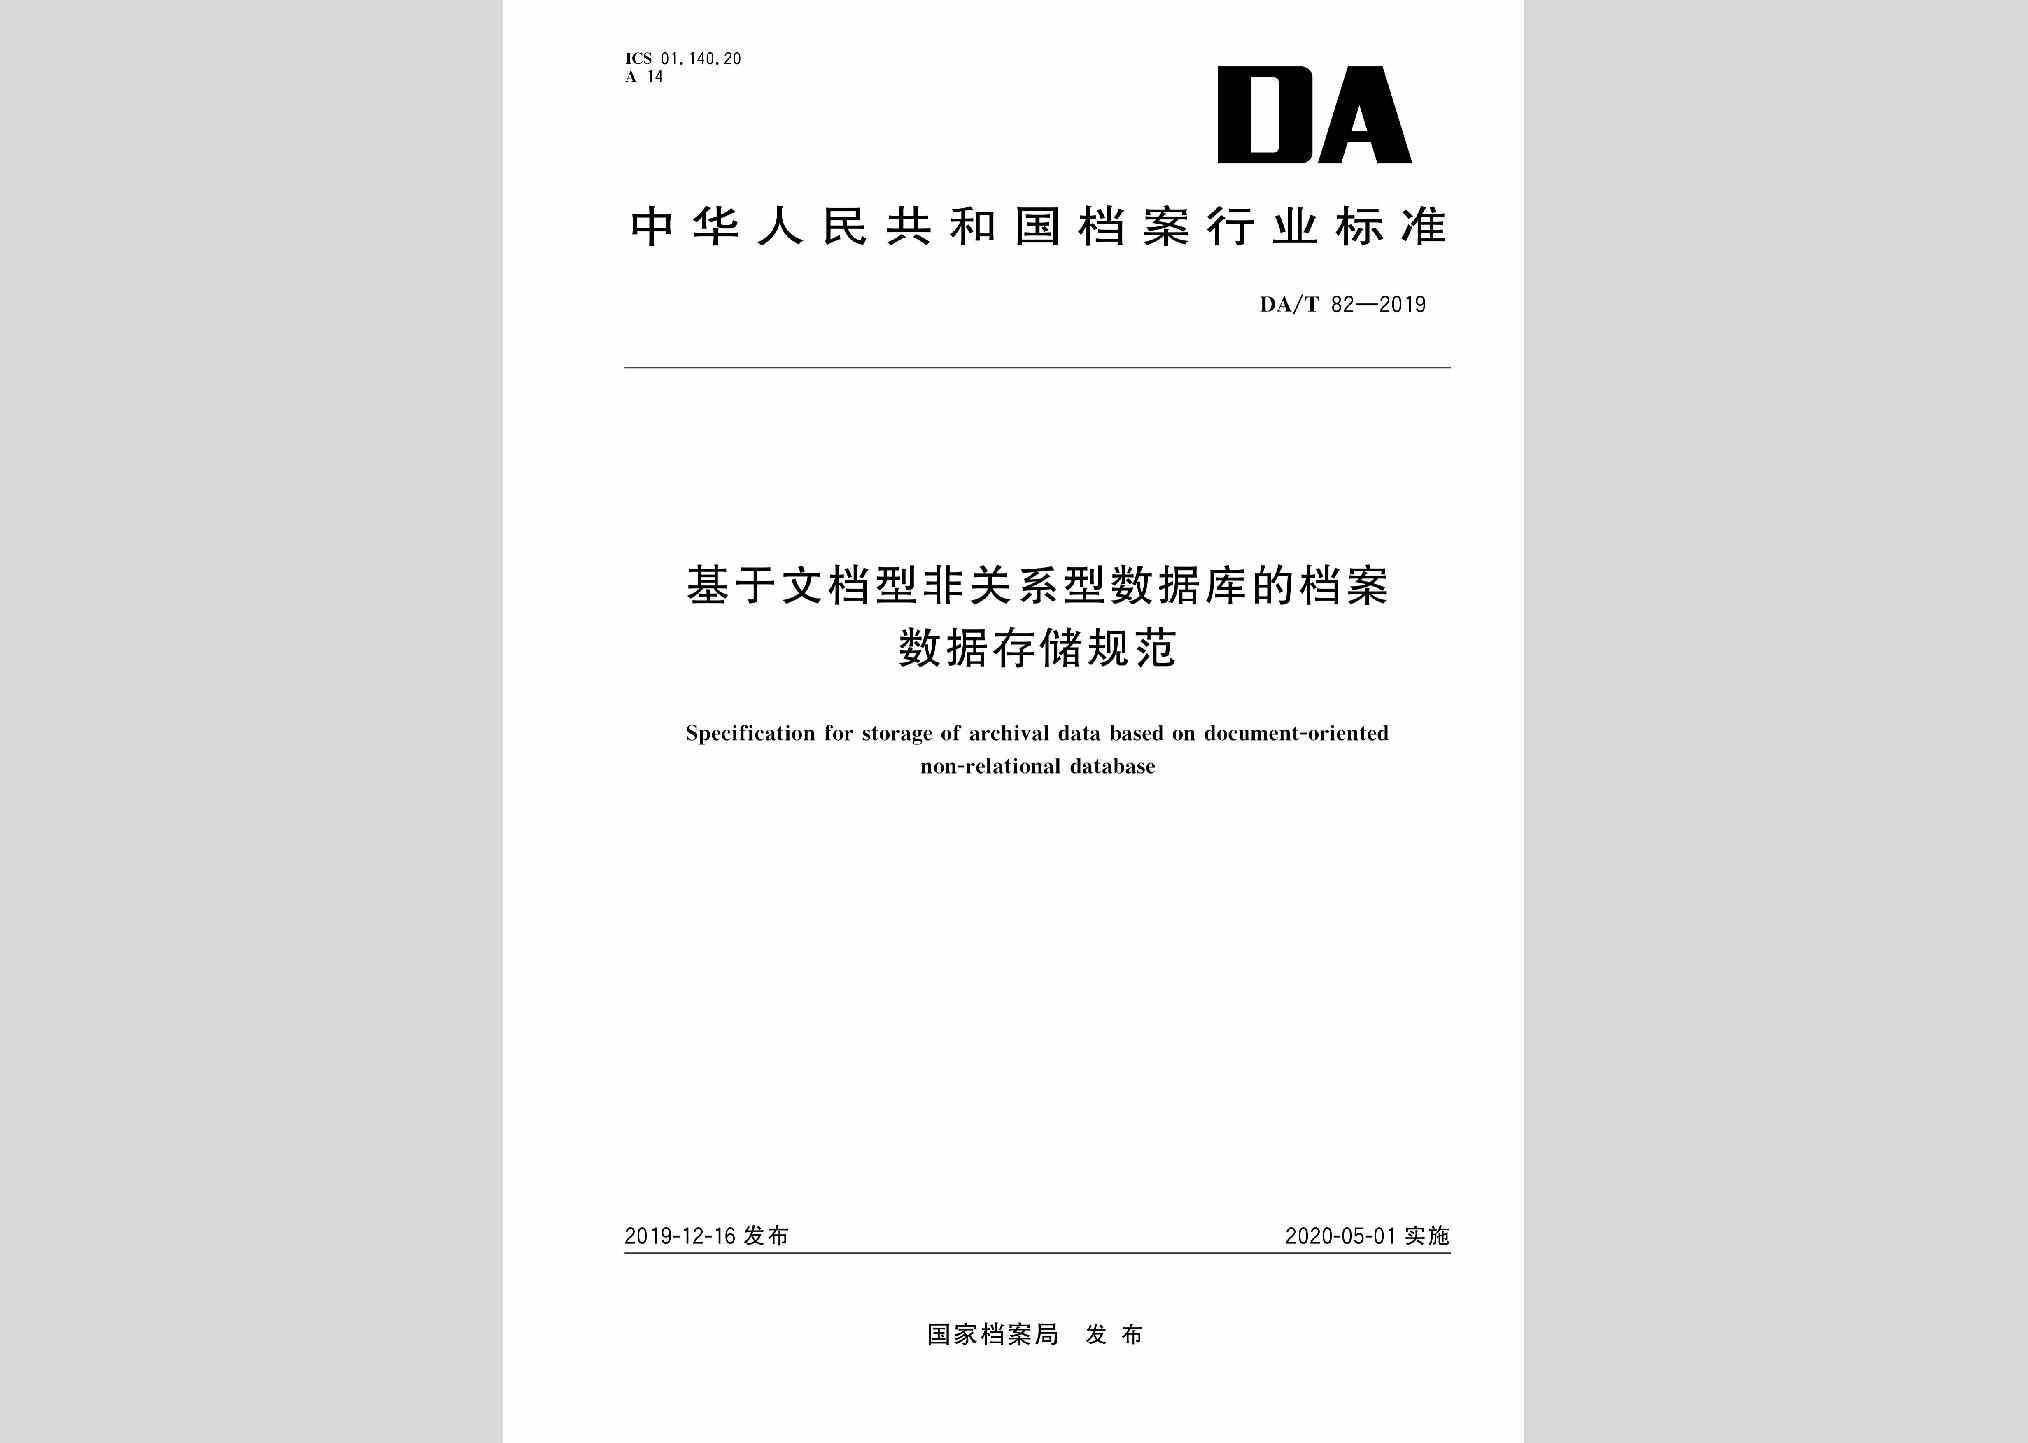 DA/T82-2019：基于文档型非关系型数据库的档案数据存储规范